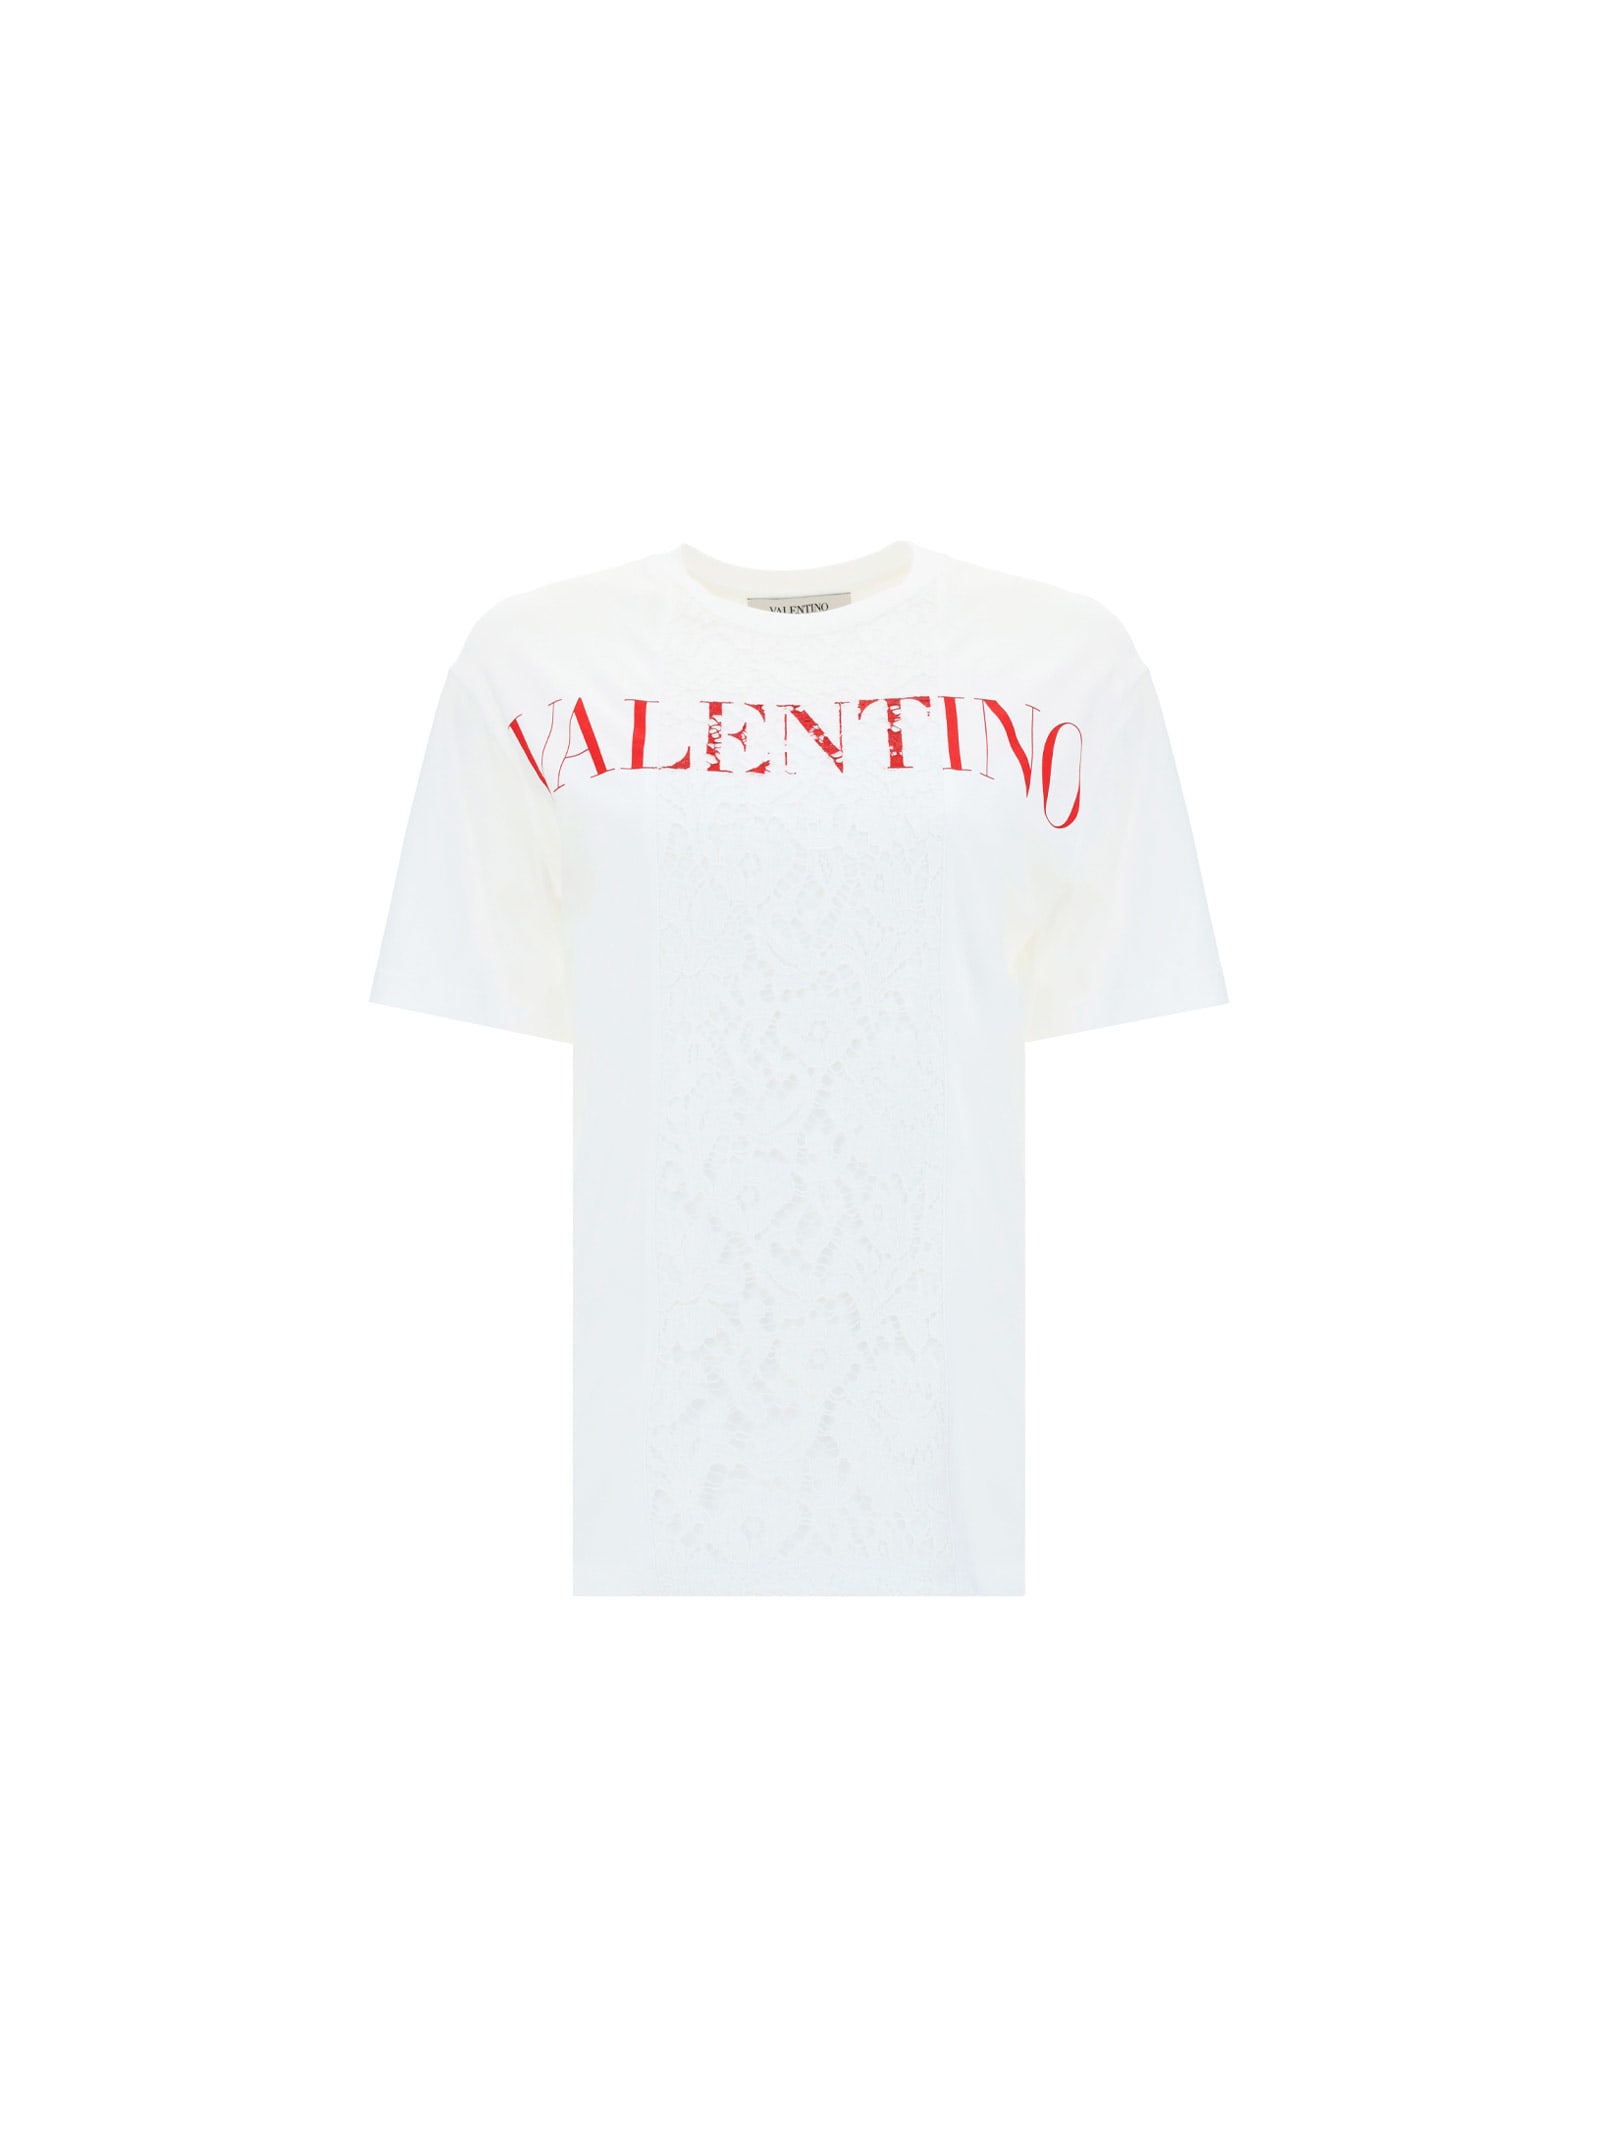 VALENTINO T-Shirts | ModeSens